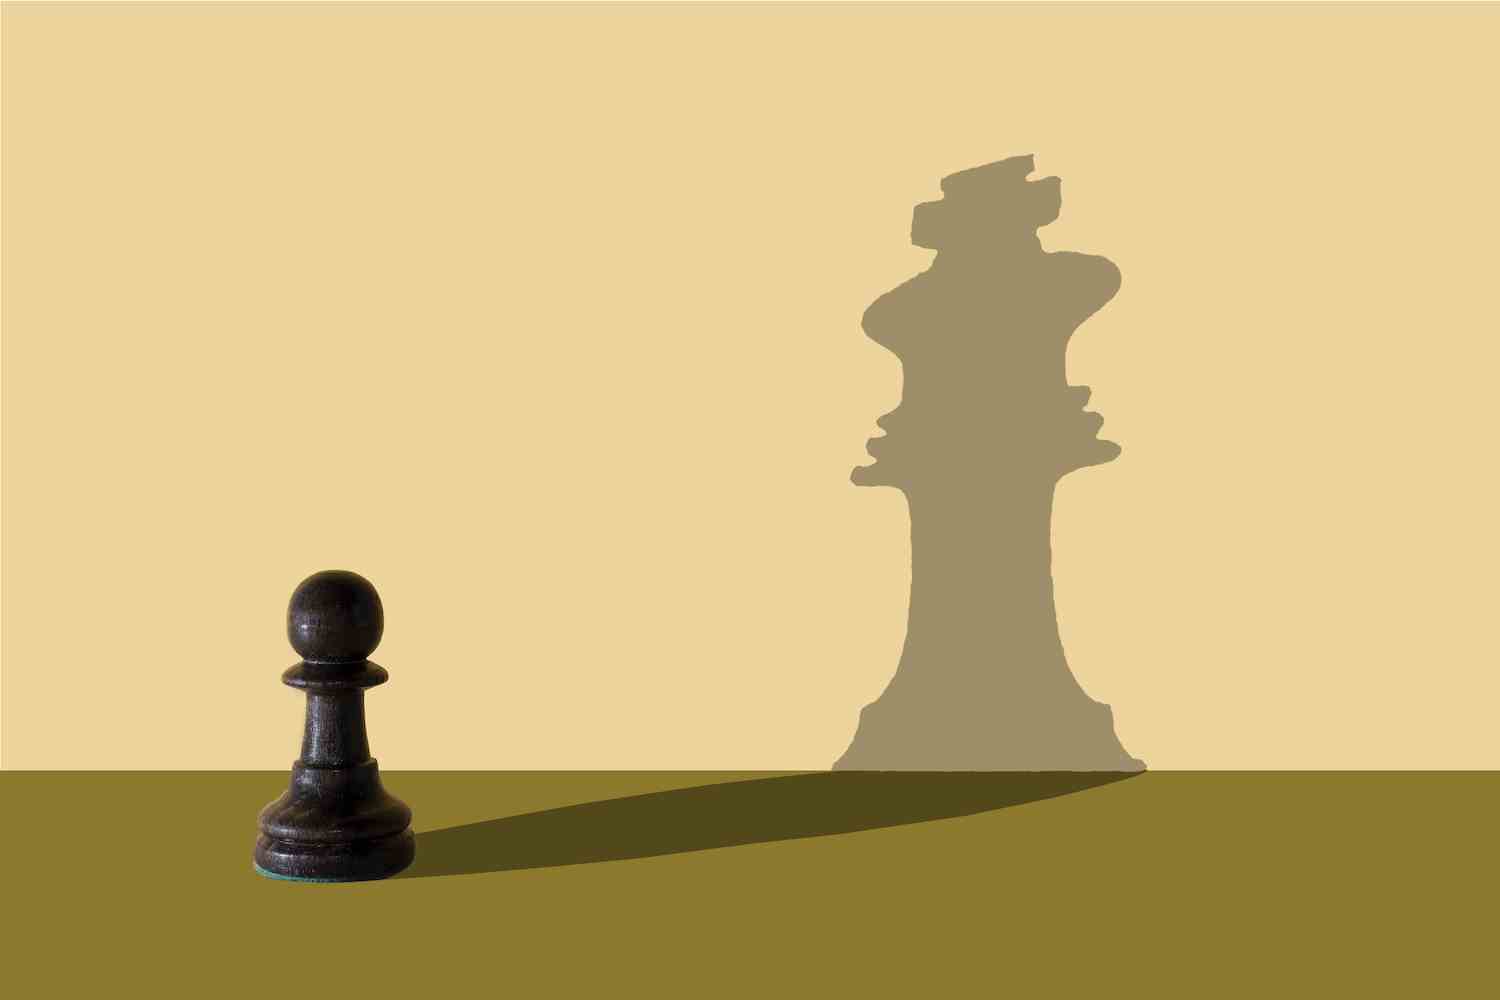 Bir satranç figürü, fotoğrafın ve illüstrasyonun ortasında bir görüntünün üzerine farklı bir figürün gölgesini düşürür.